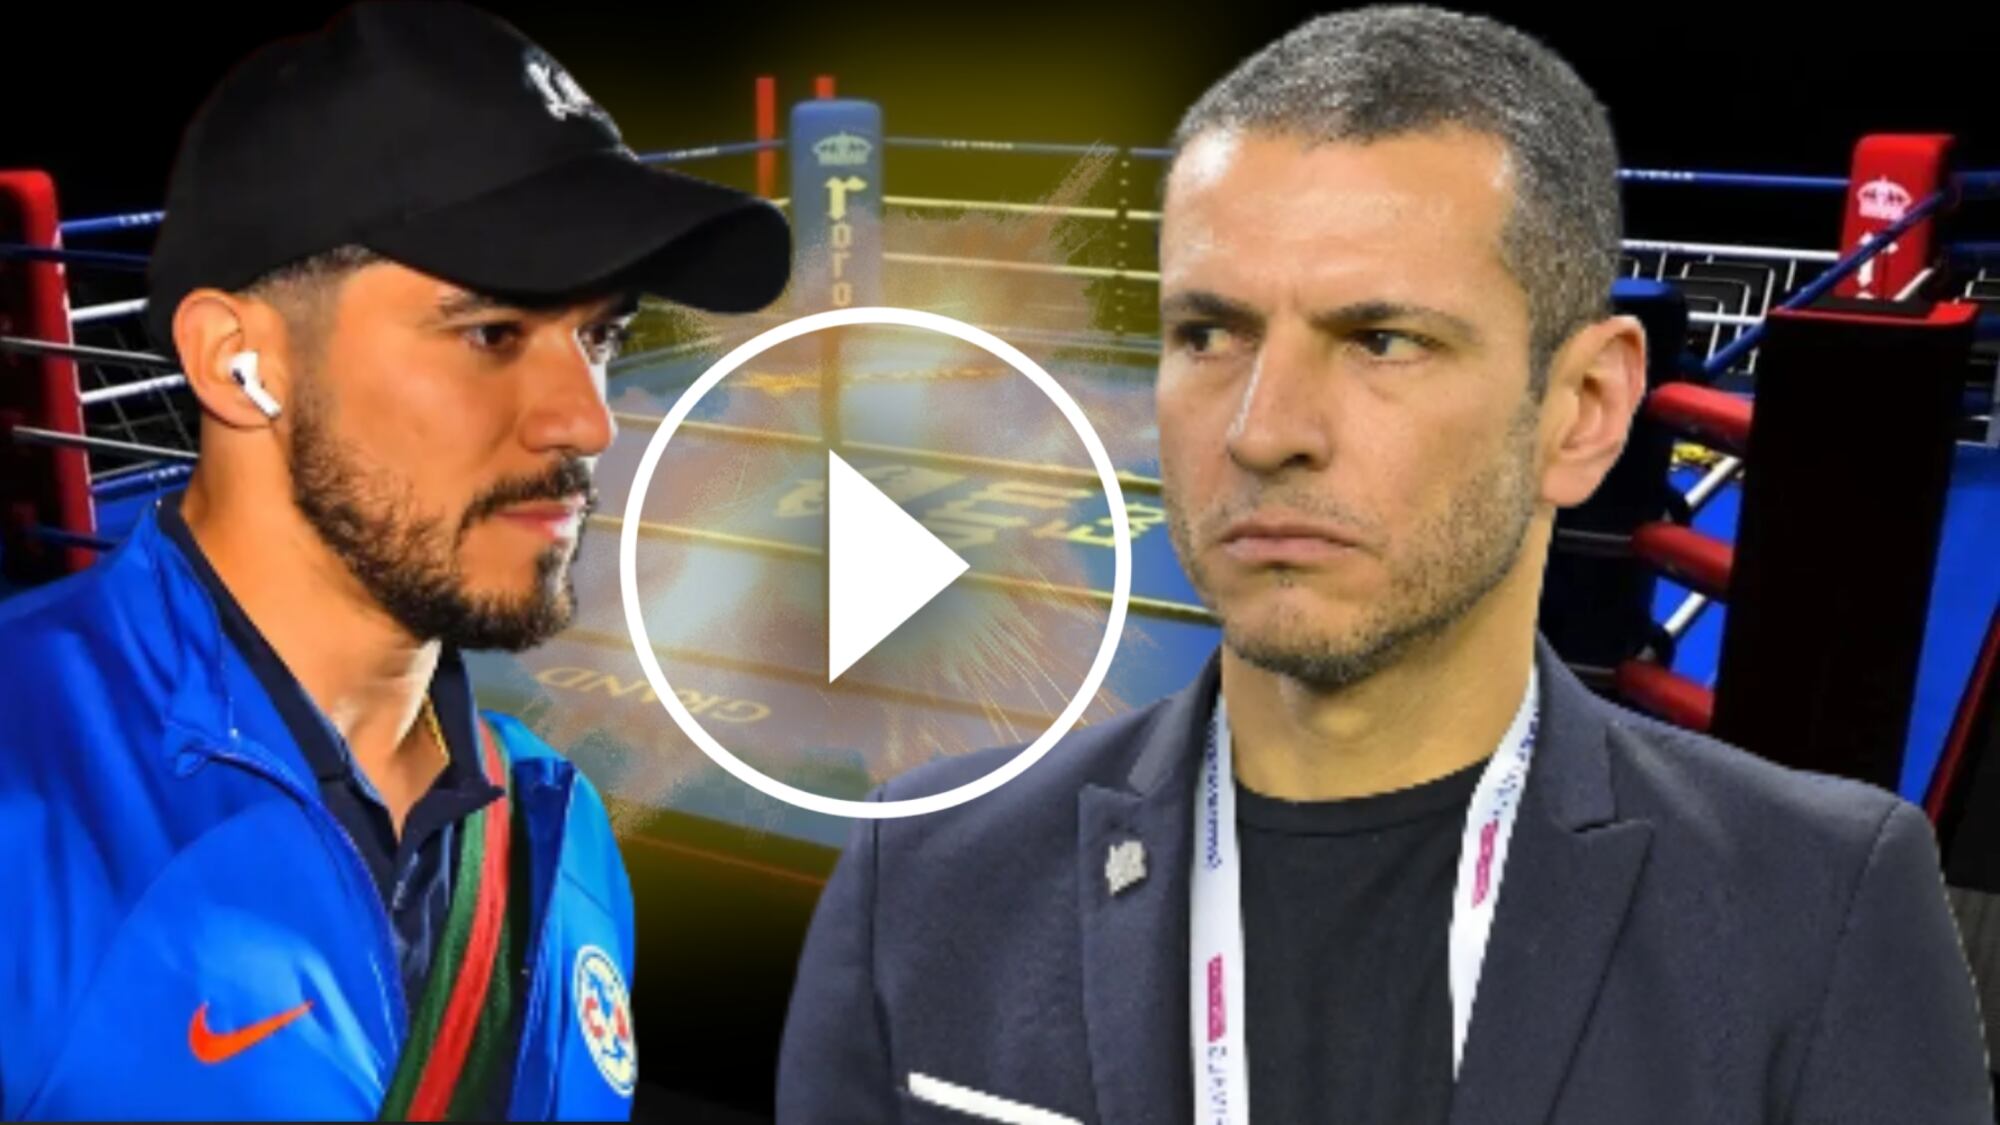 (VIDEO) En exclusiva, lo que se sabe de la bronca de Martín con Lozano por no llevarlo a Copa América